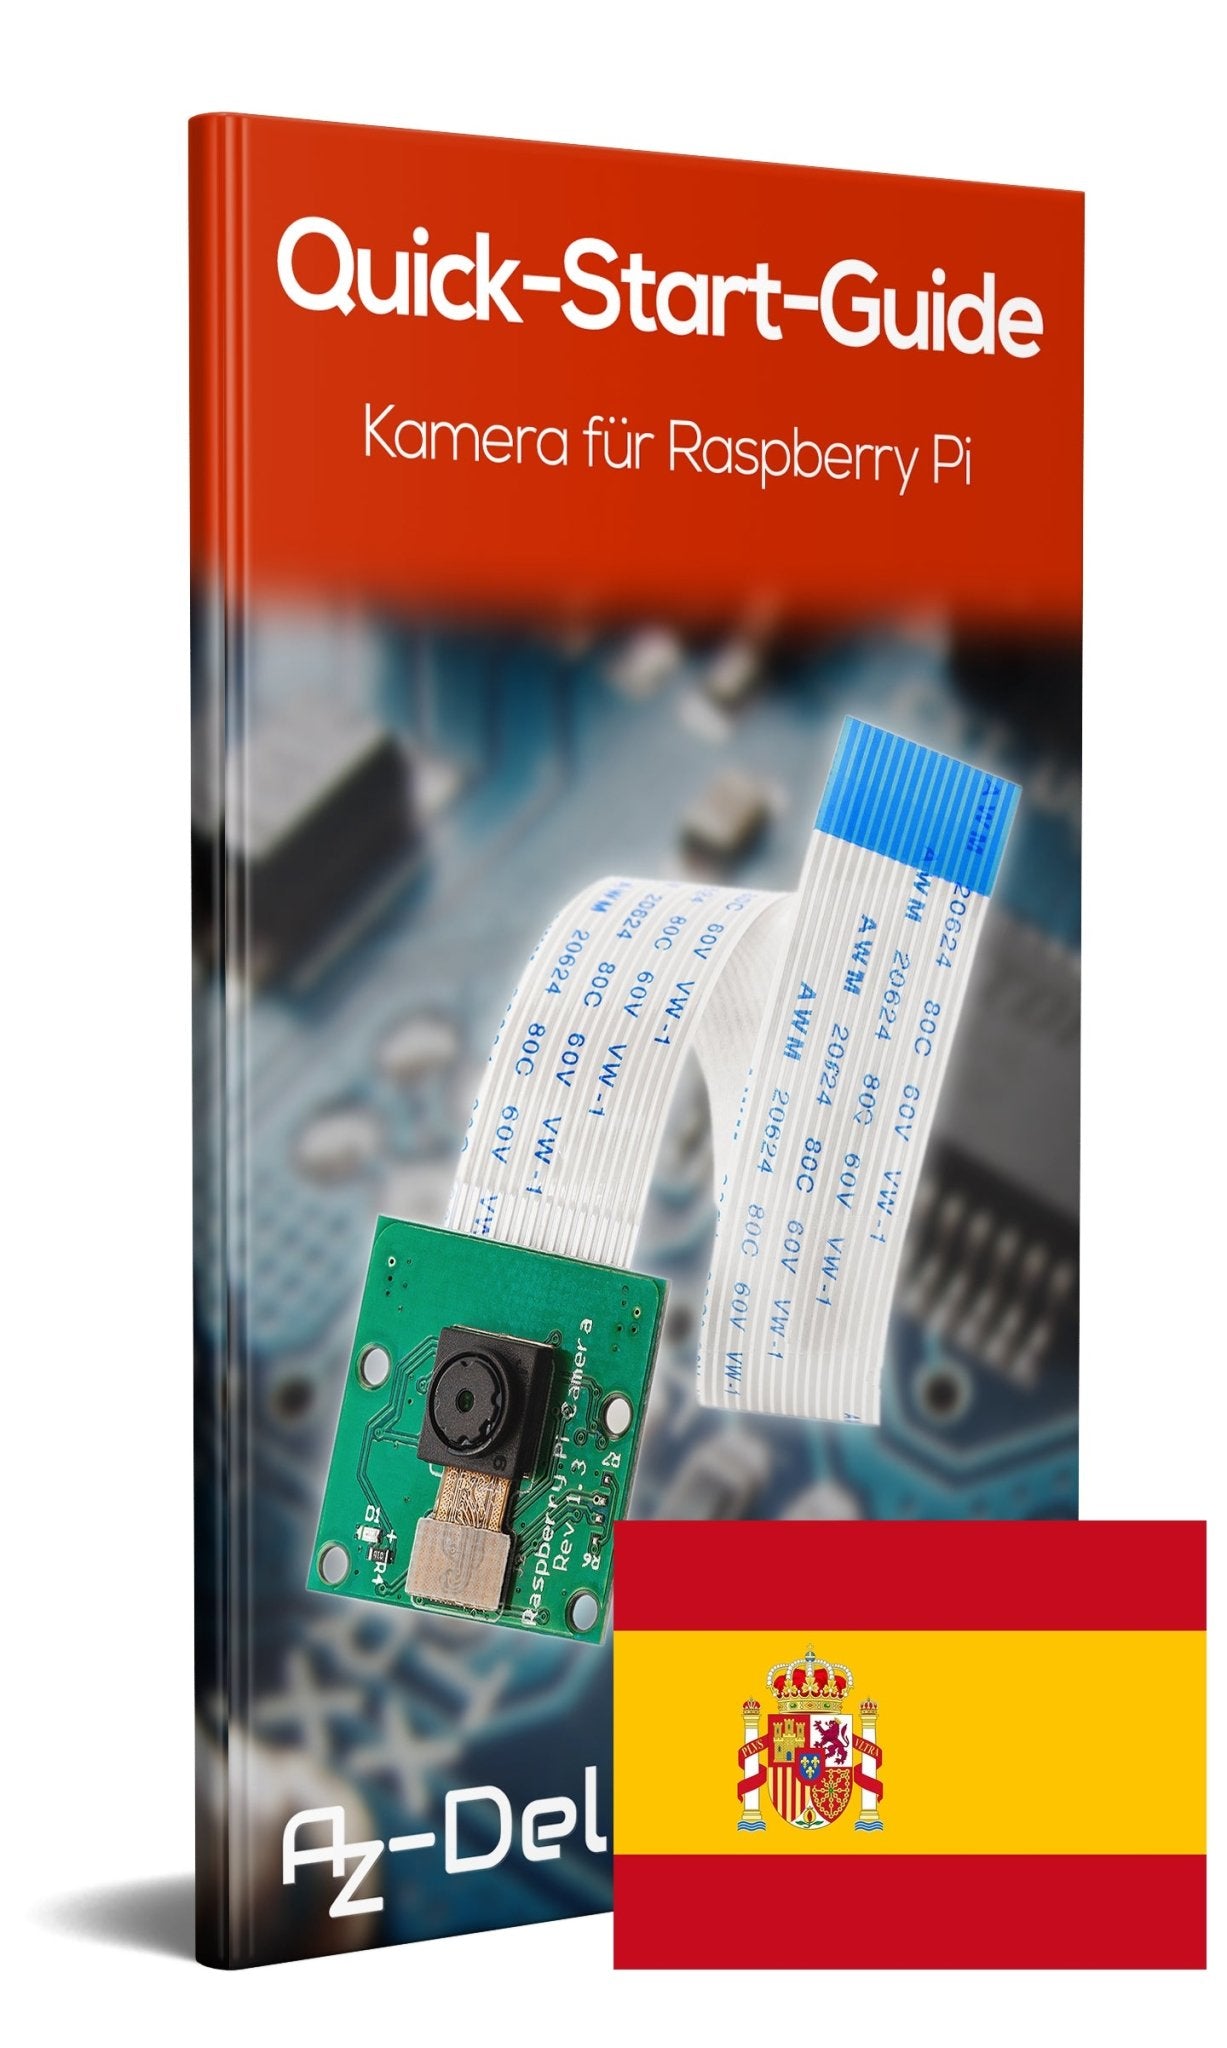 Kamera für Raspberry Pi - AZ-Delivery